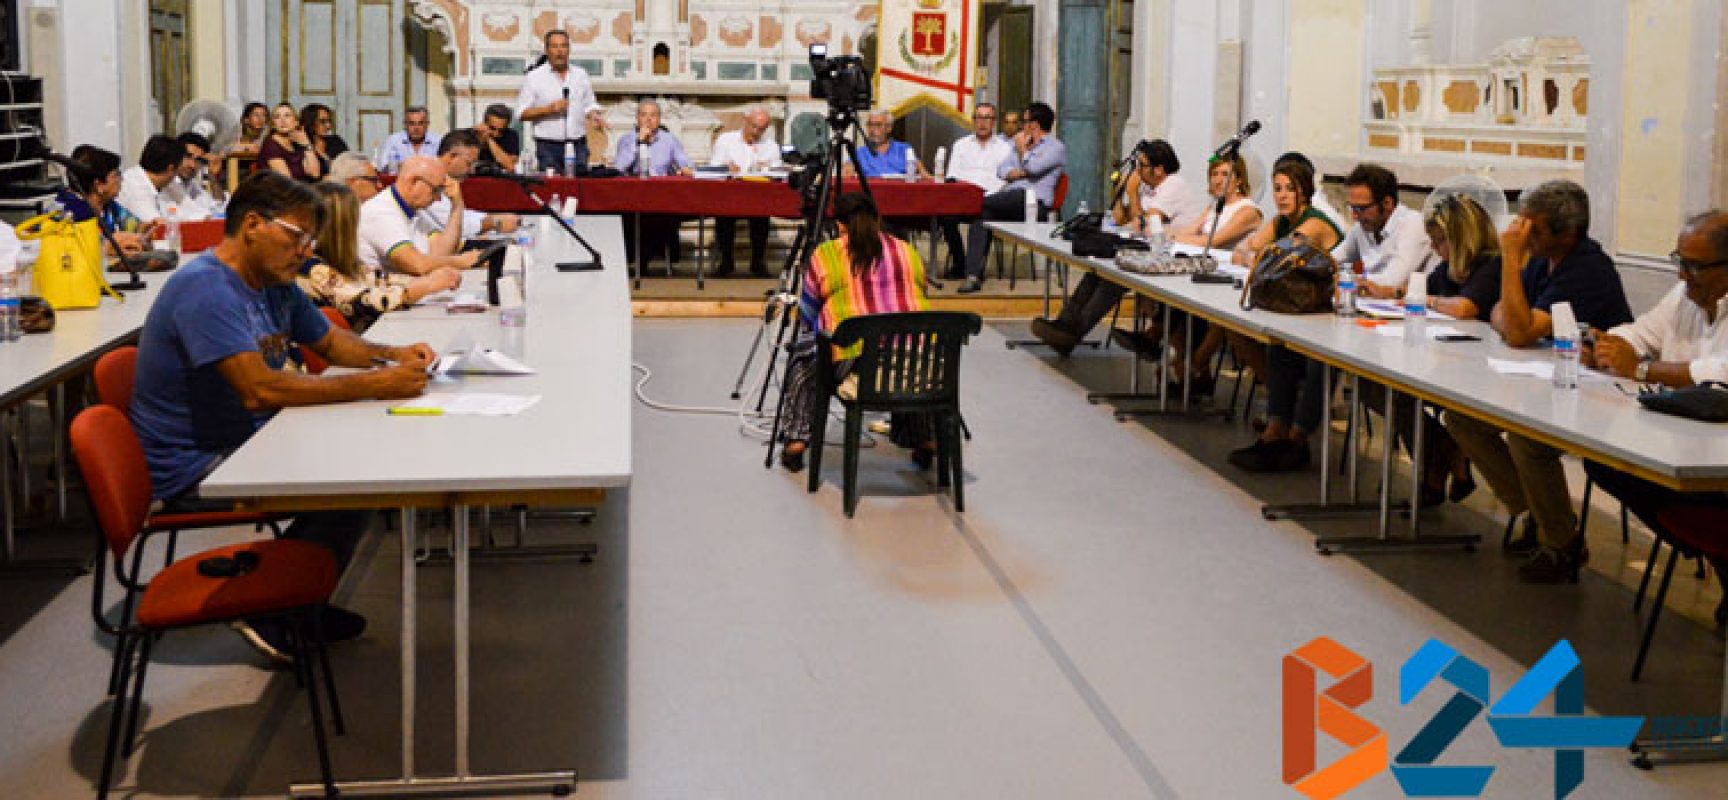 Mattarella scioglie consiglio comunale Bisceglie, atto ordinario dopo decadenza sindaco